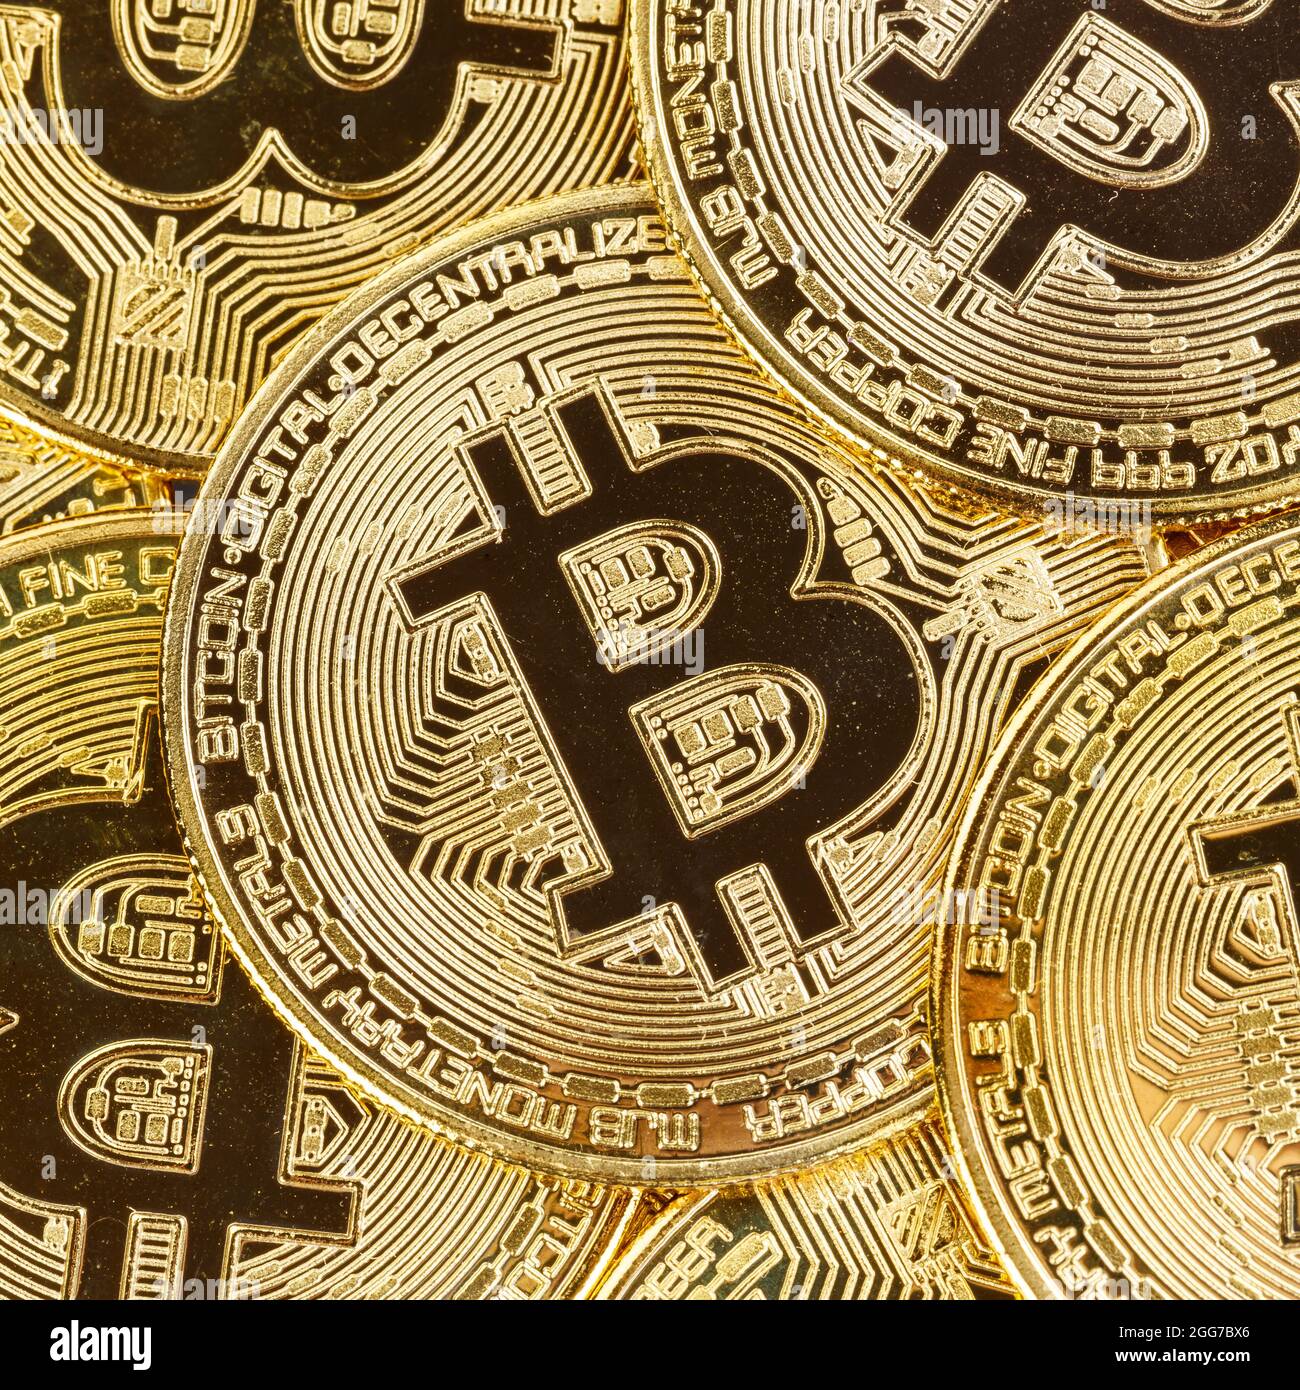 Bitcoin Krypto Währung online bezahlen digitales Geld Kryptowährung Geschäft Finanziert quadratische Bit-Münze Stockfoto